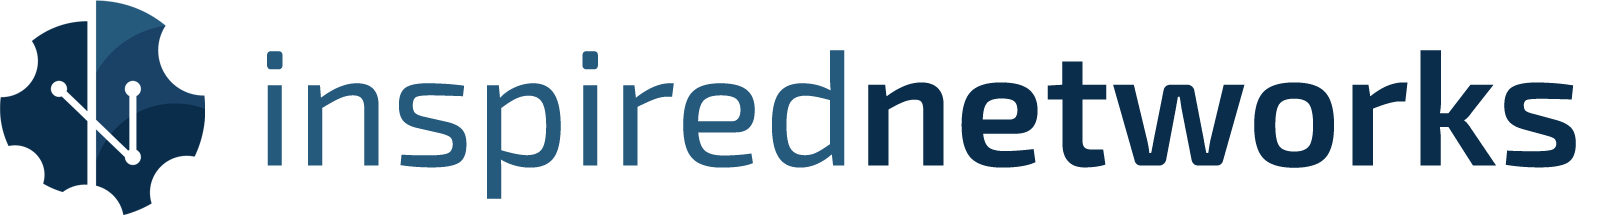 inspired networks logo